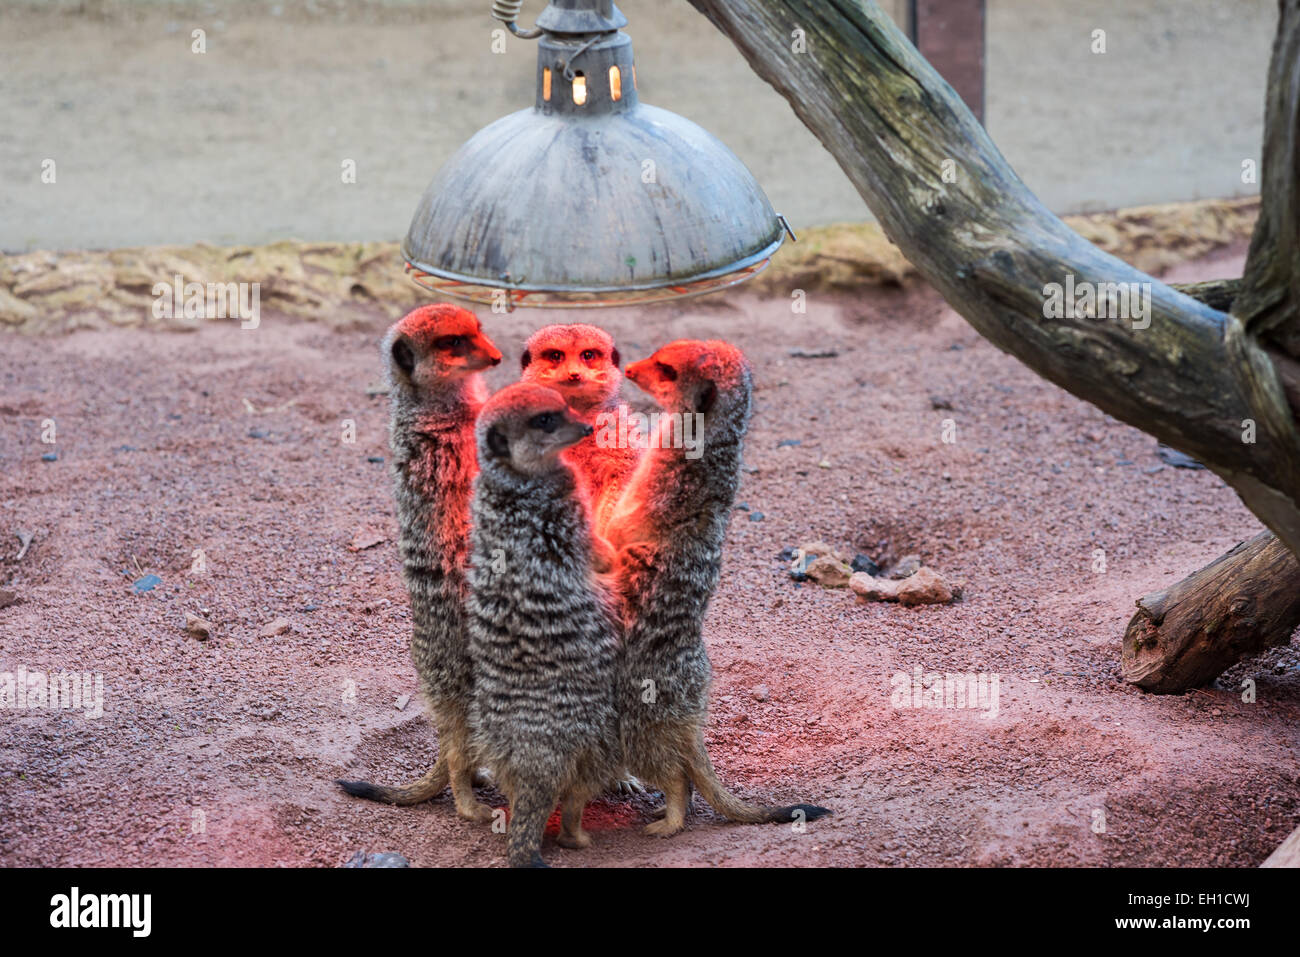 Meerkats pararse bajo la lámpara de calor Foto de stock